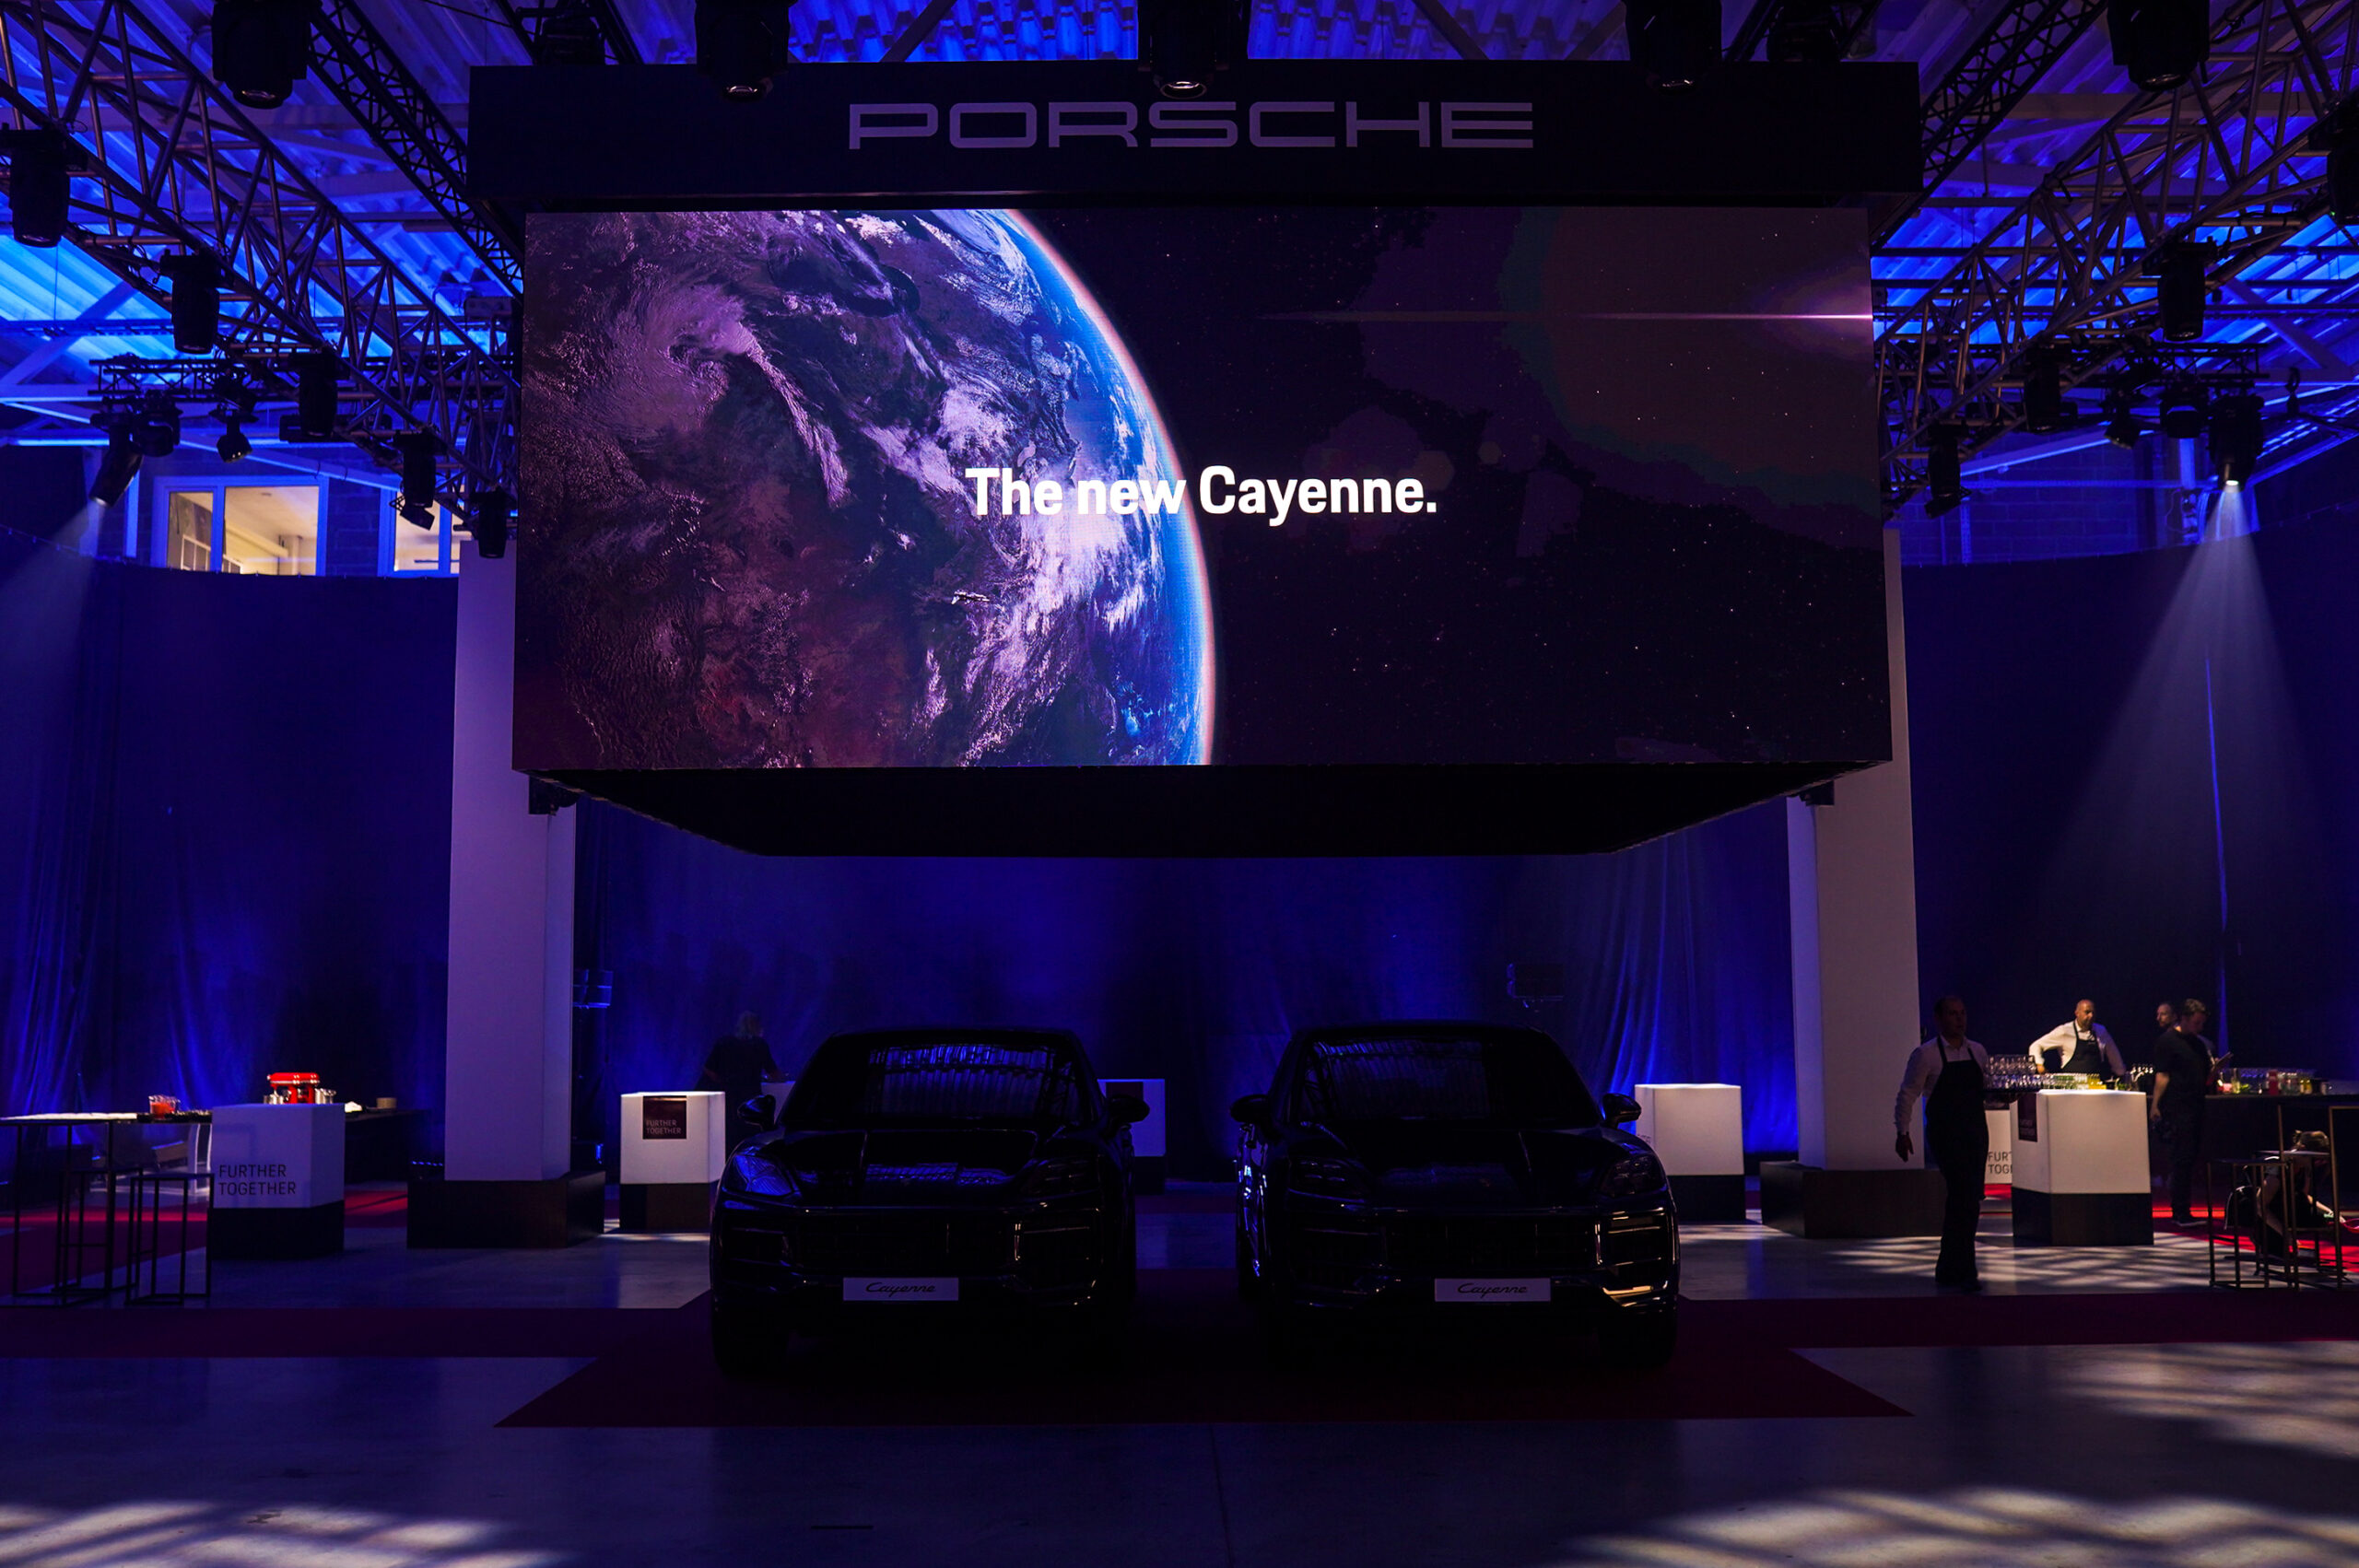 Porsche Cayenne presentation